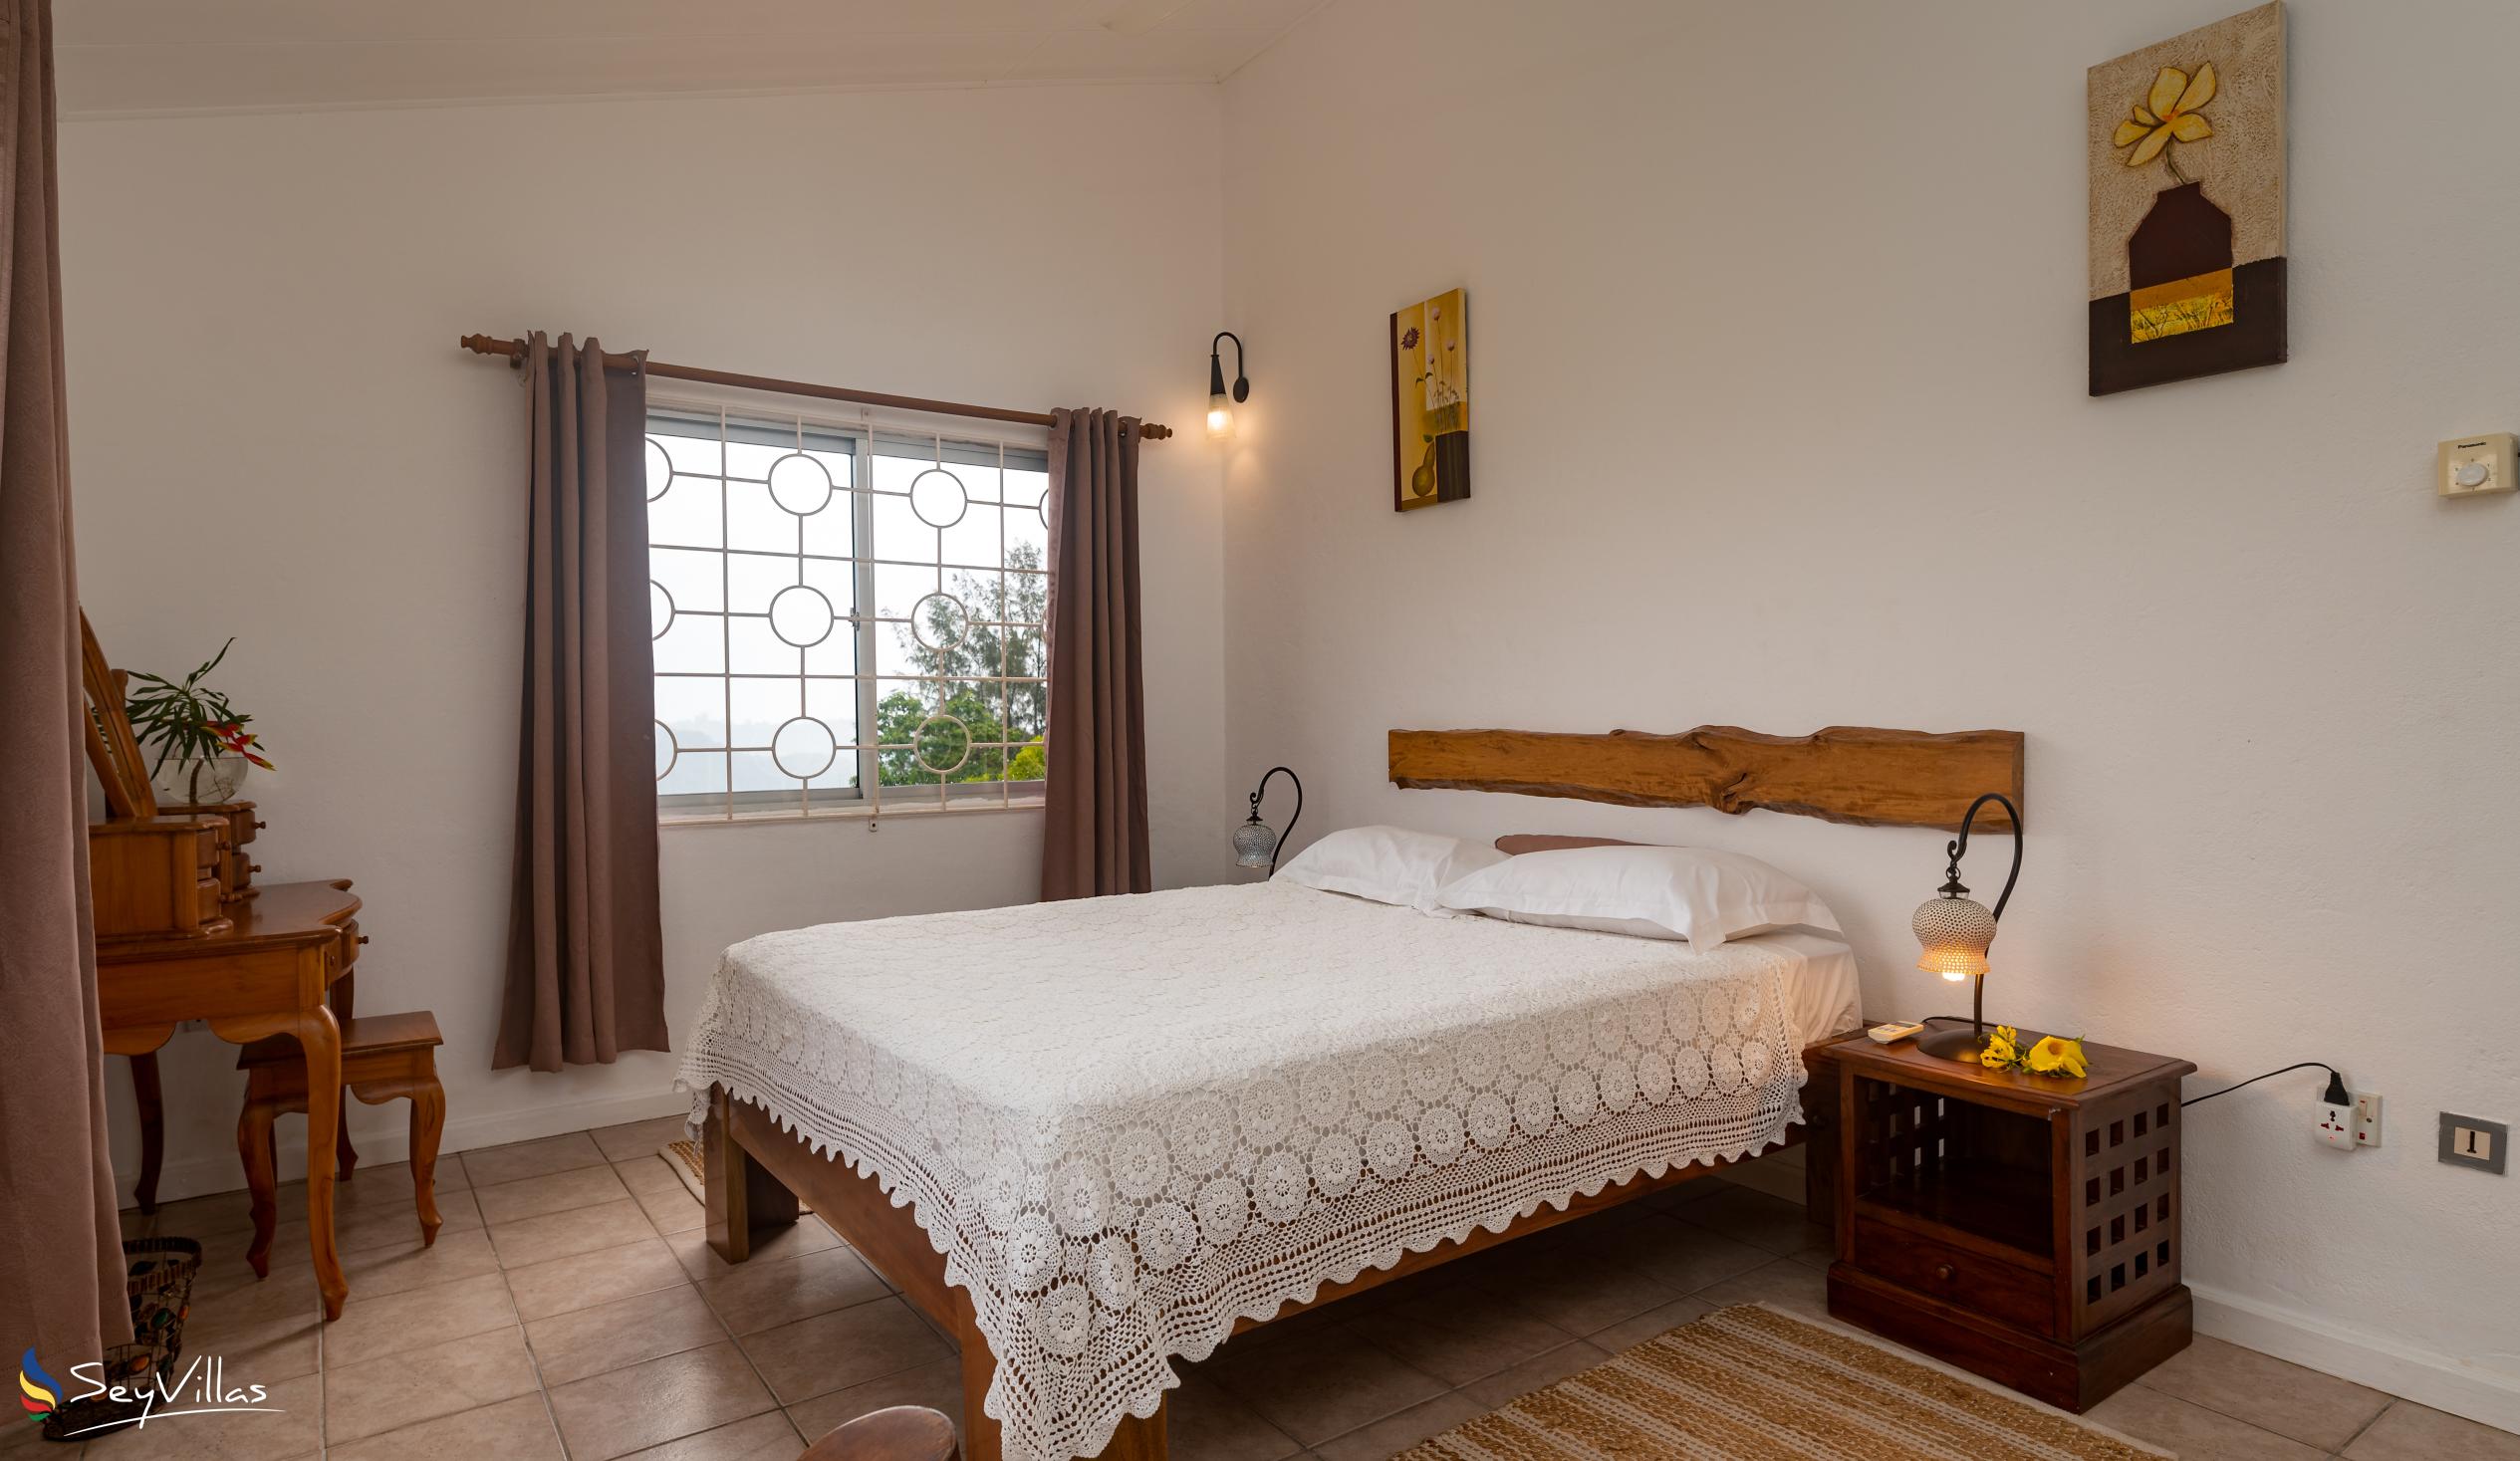 Foto 54: Residence Monte Cristo - Appartamento con 2 camere - Mahé (Seychelles)